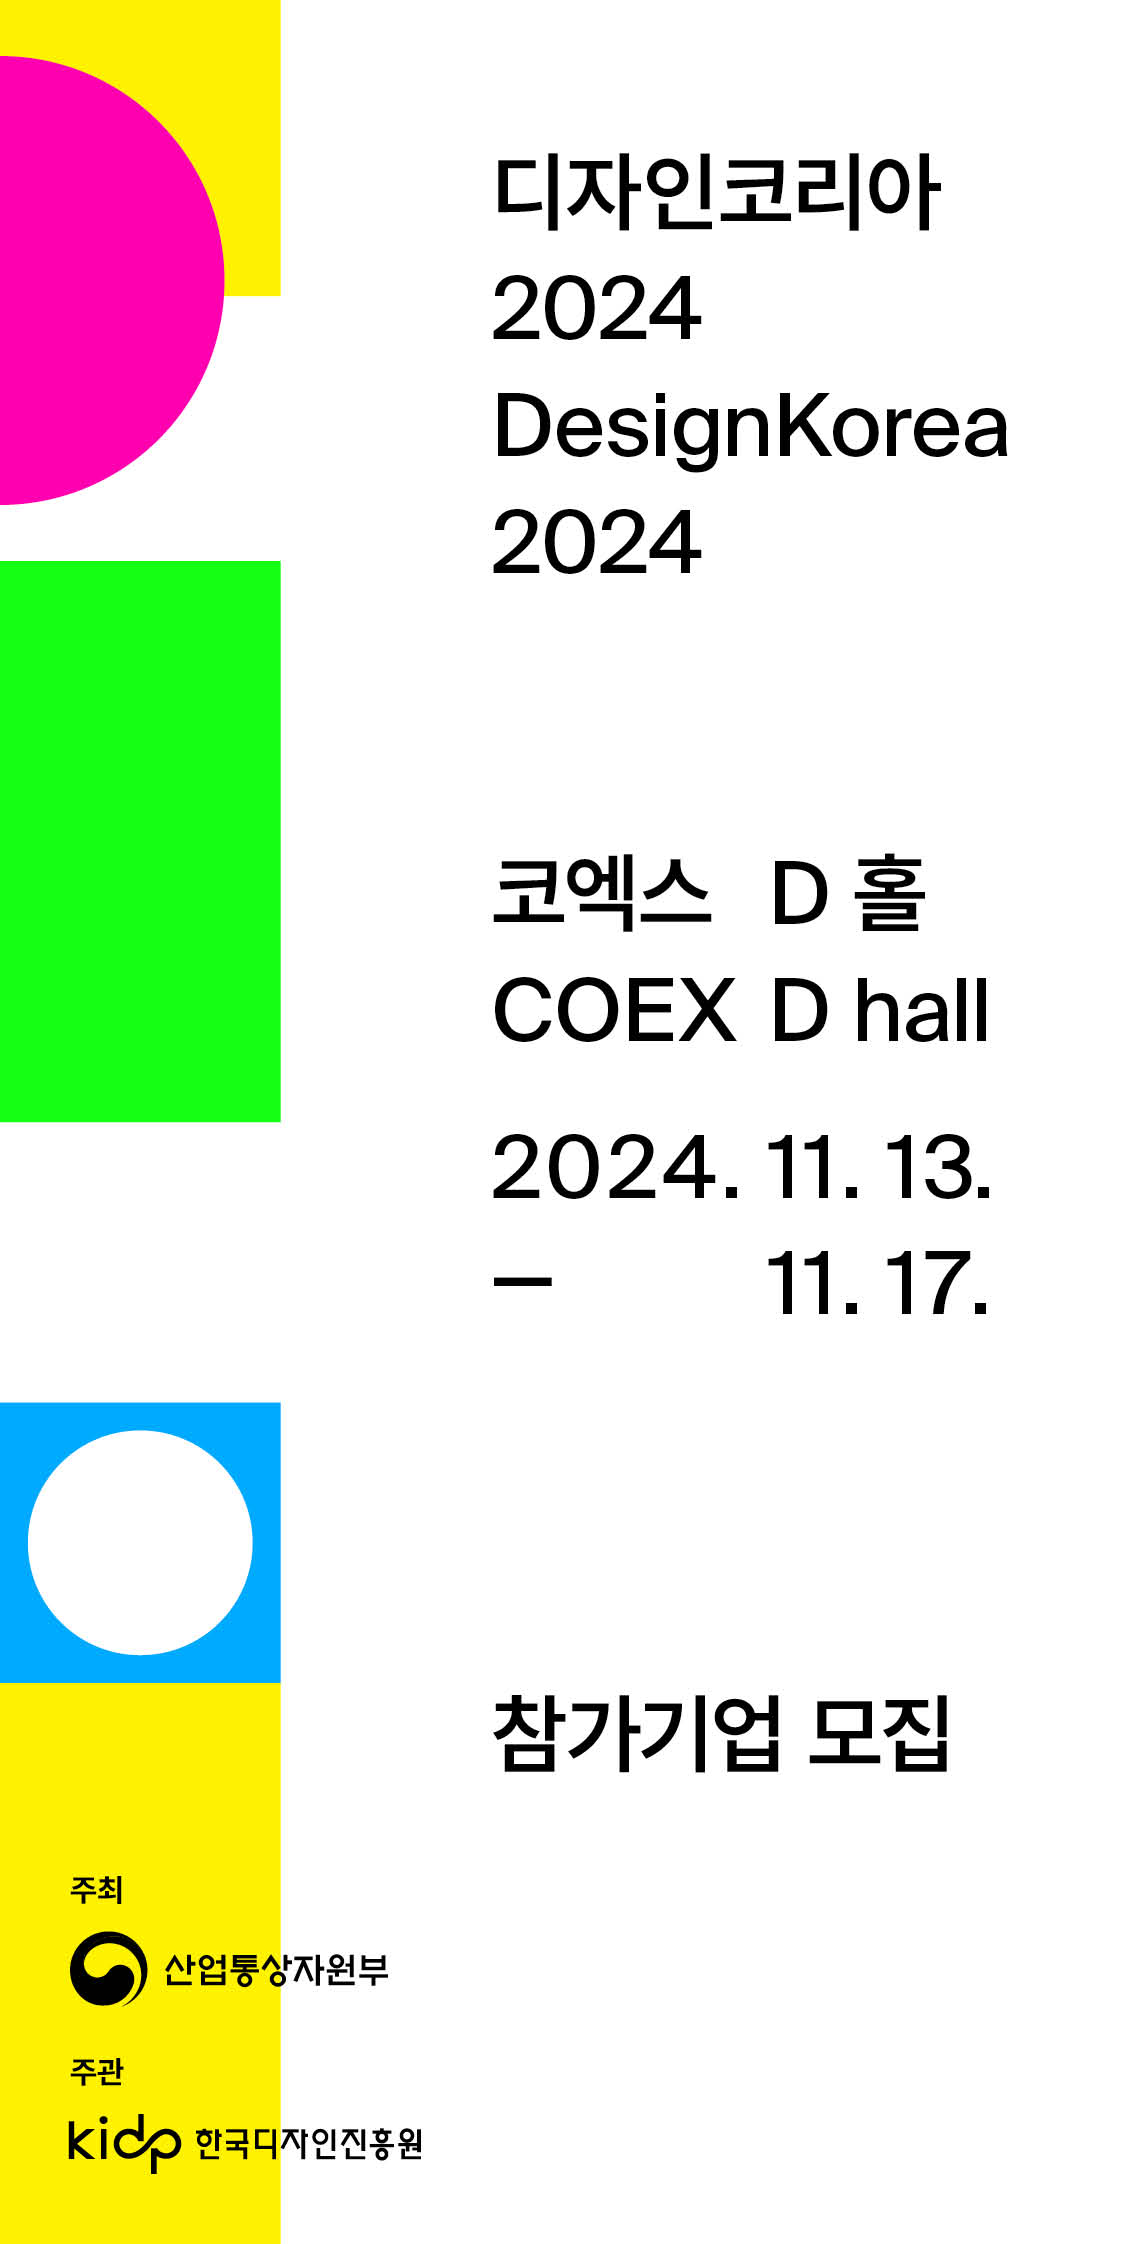 DESIGN KOREA 2024 Leaflet Design_image